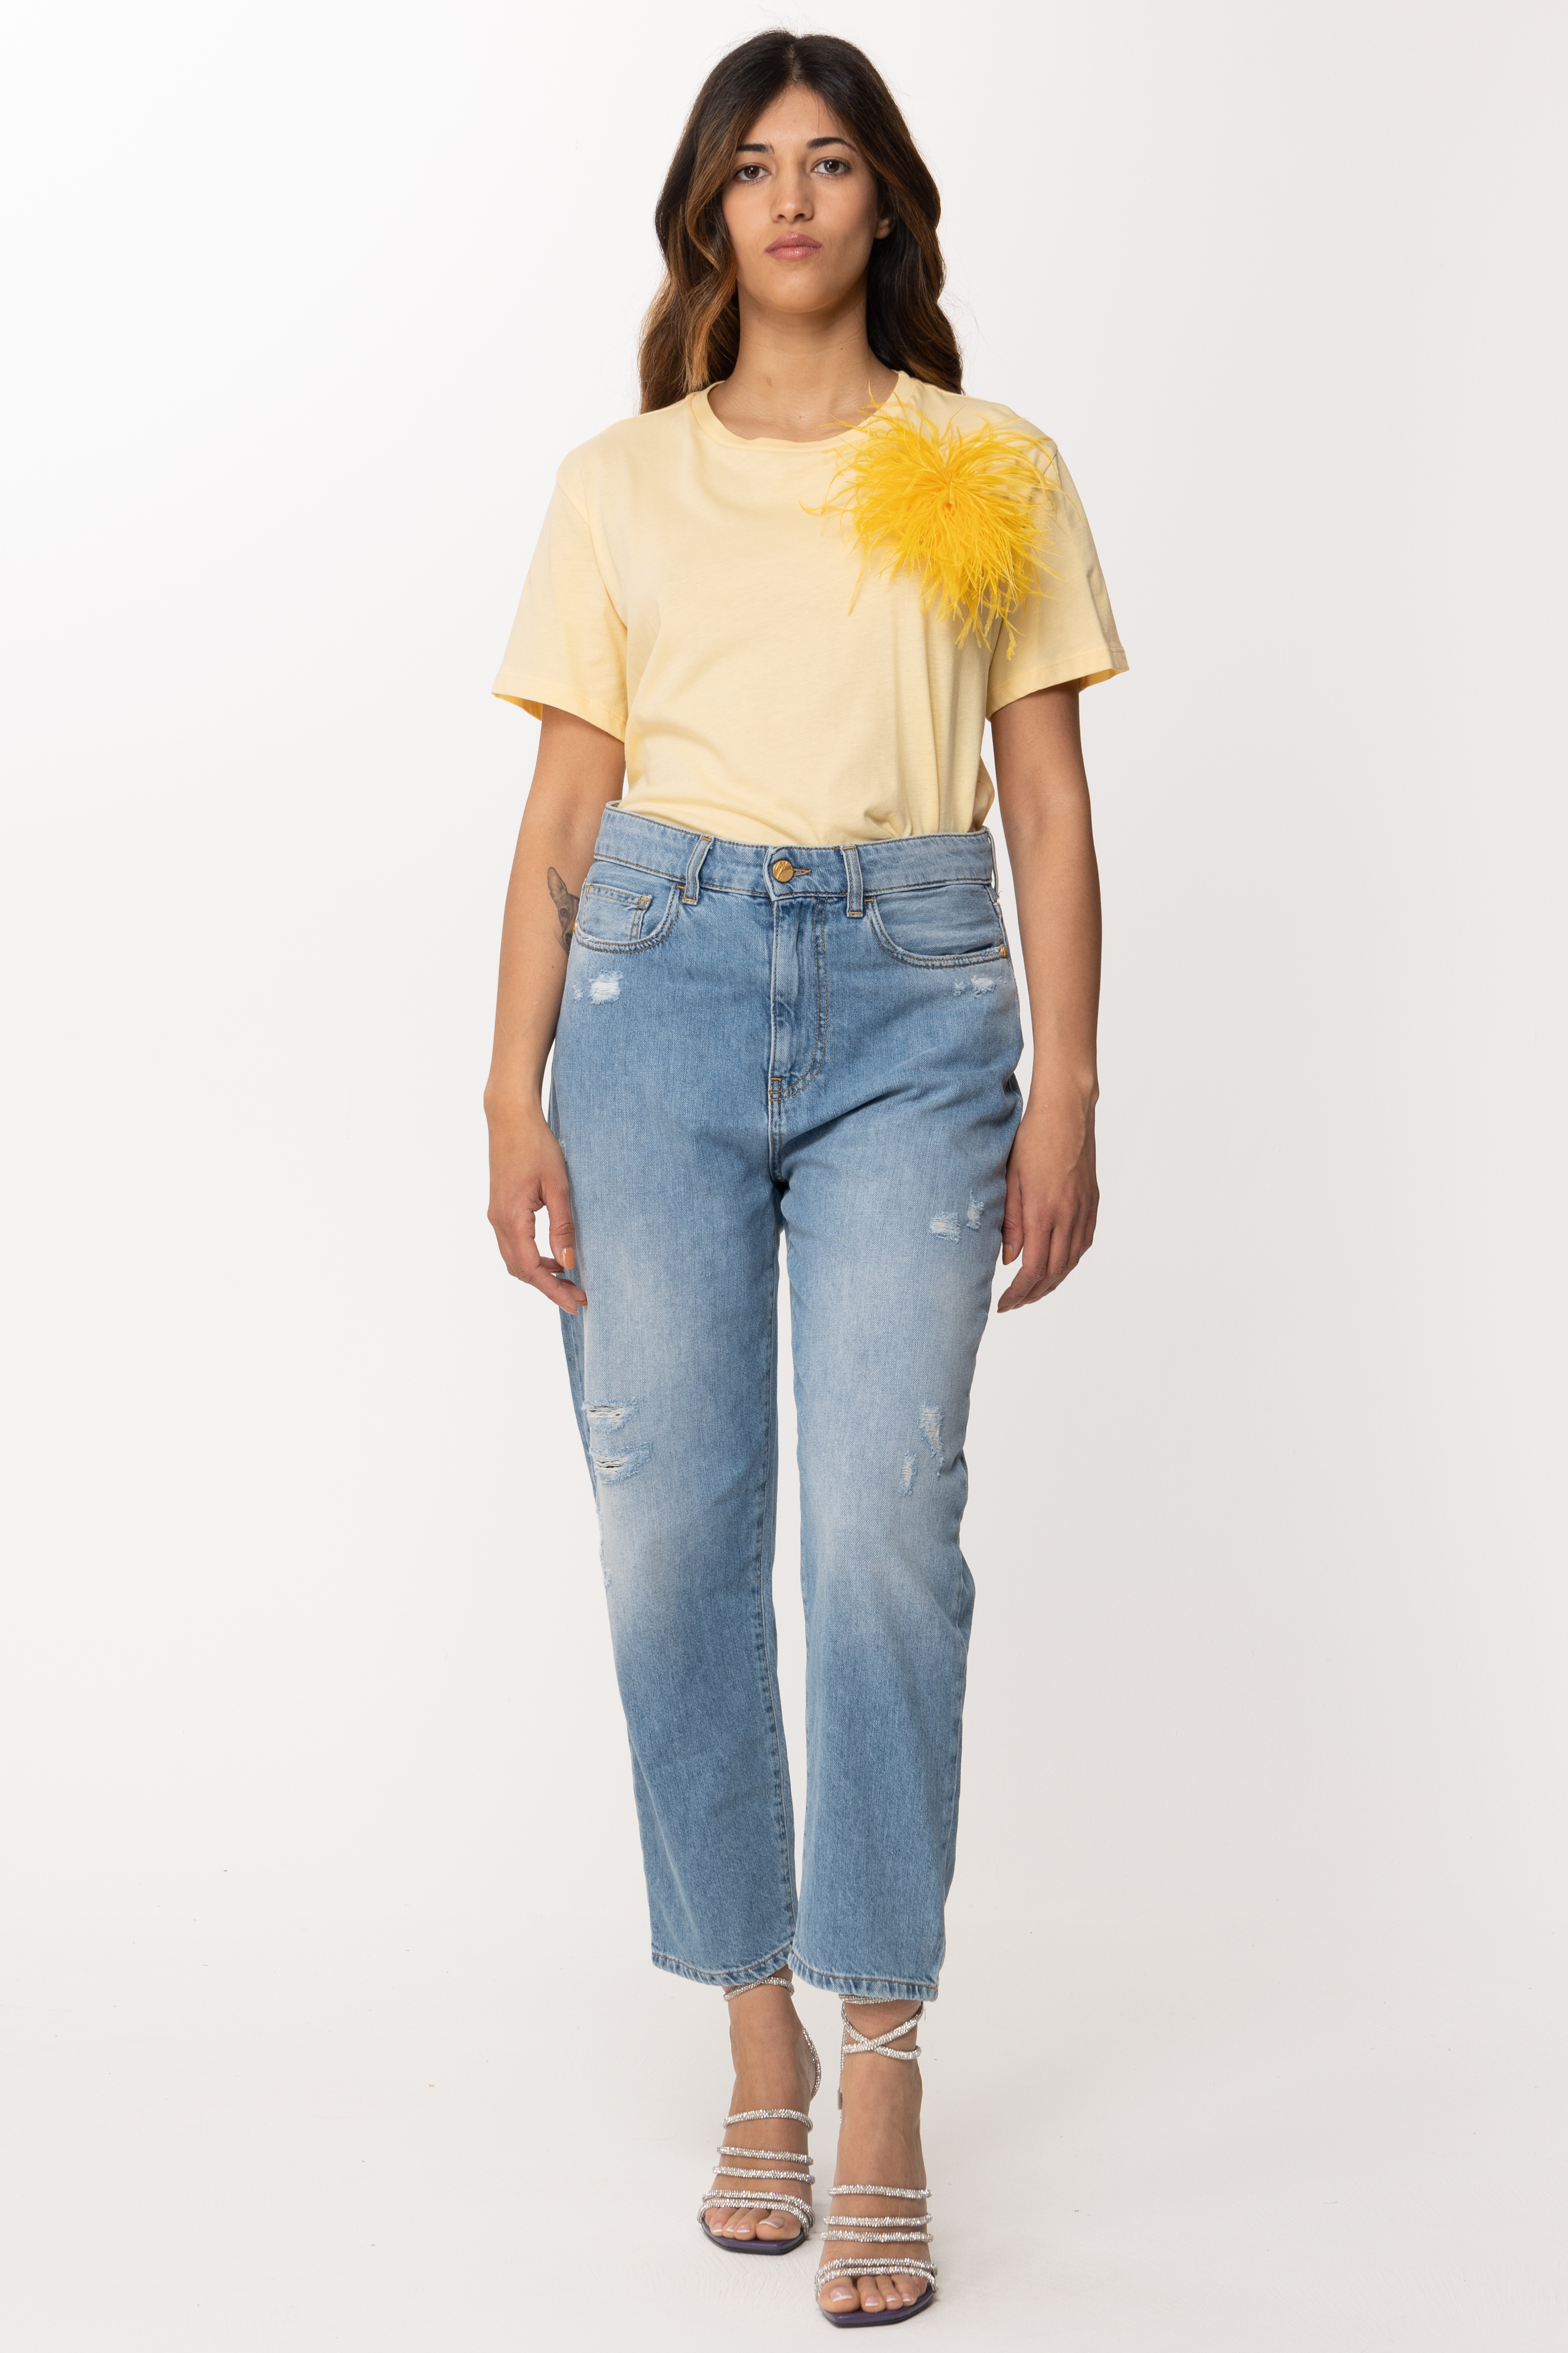 Vorschau: Patrizia Pepe T-Shirt mit Federeinsatz Clarity Yellow